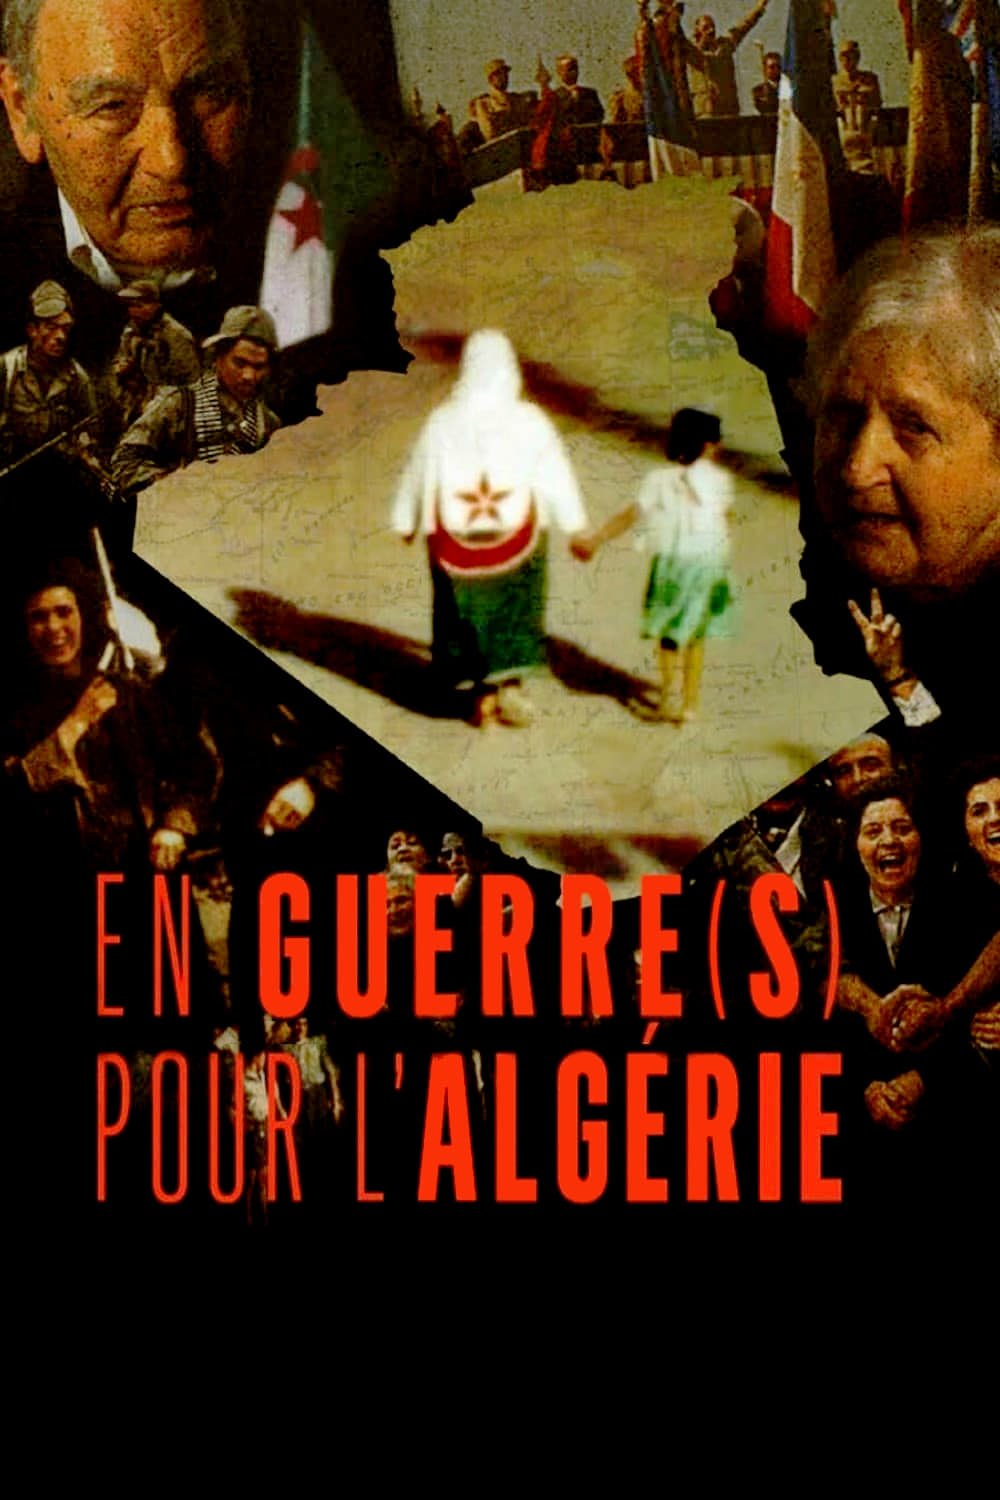 En guerre(s) pour l'Algérie